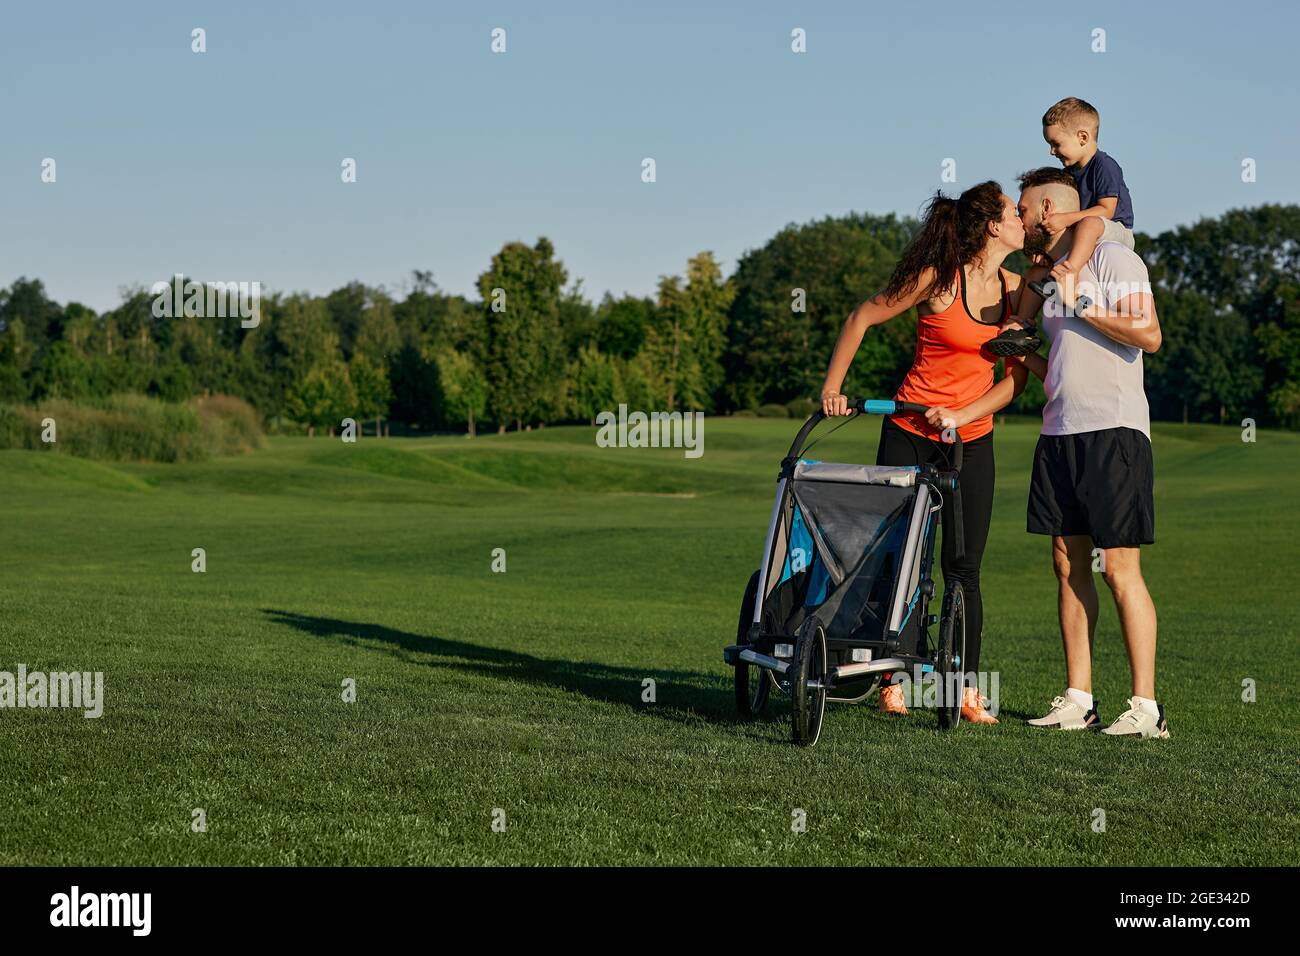 Une jeune famille heureuse avec un enfant passe du temps ensemble tout en marchant avec une poussette sur une pelouse verte dans un parc de la ville pendant un week-end. Jour de la famille Banque D'Images